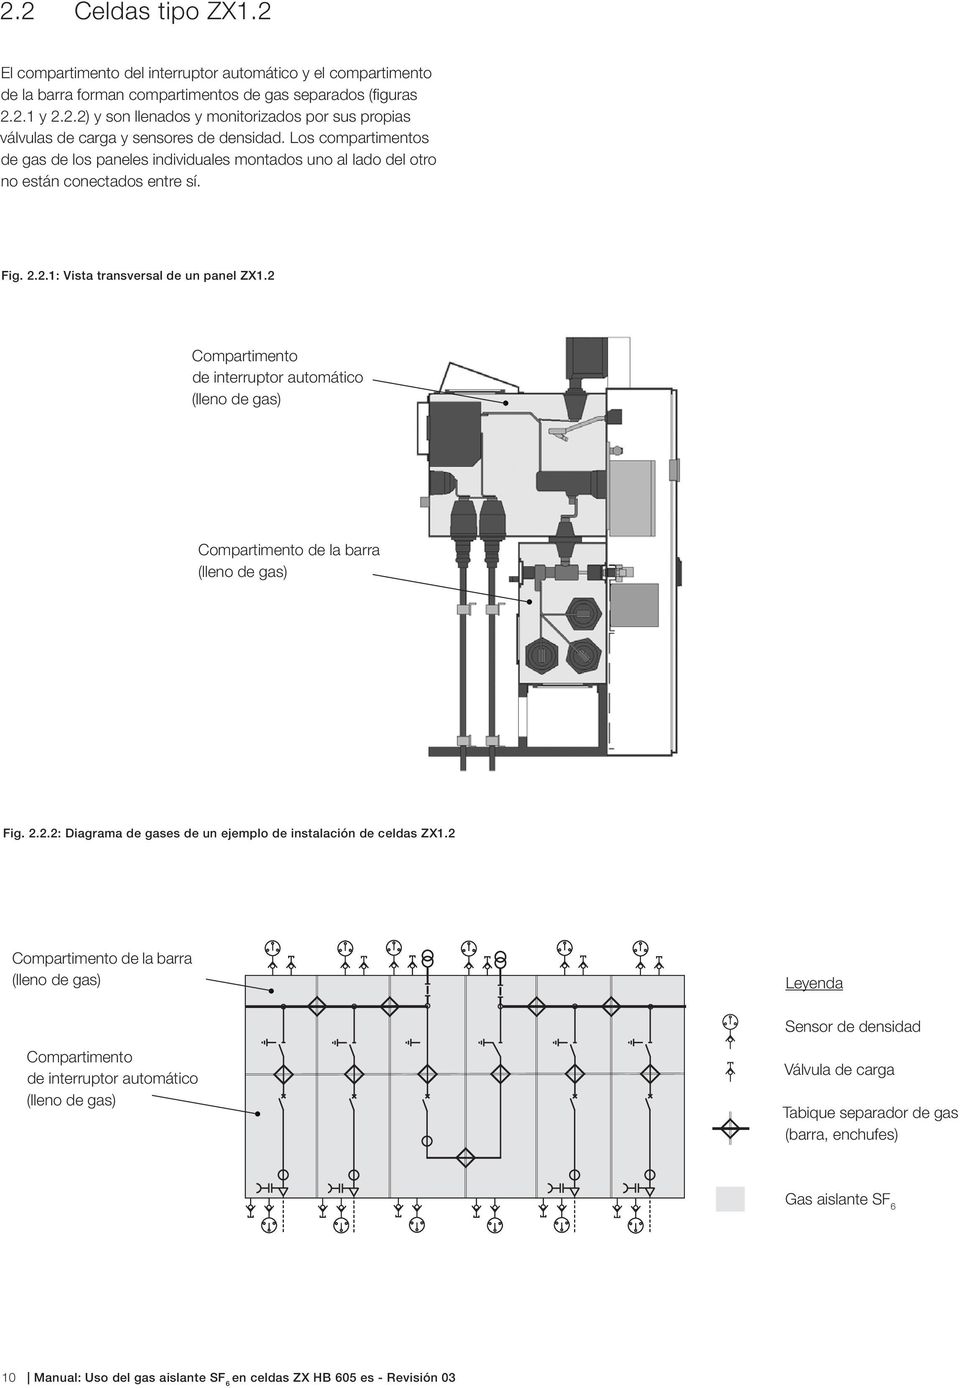 2 Compartimento de interruptor automático (lleno de gas) Compartimento de la barra (lleno de gas) Fig. 2.2.2: Diagrama de gases de un ejemplo de instalación de celdas ZX1.